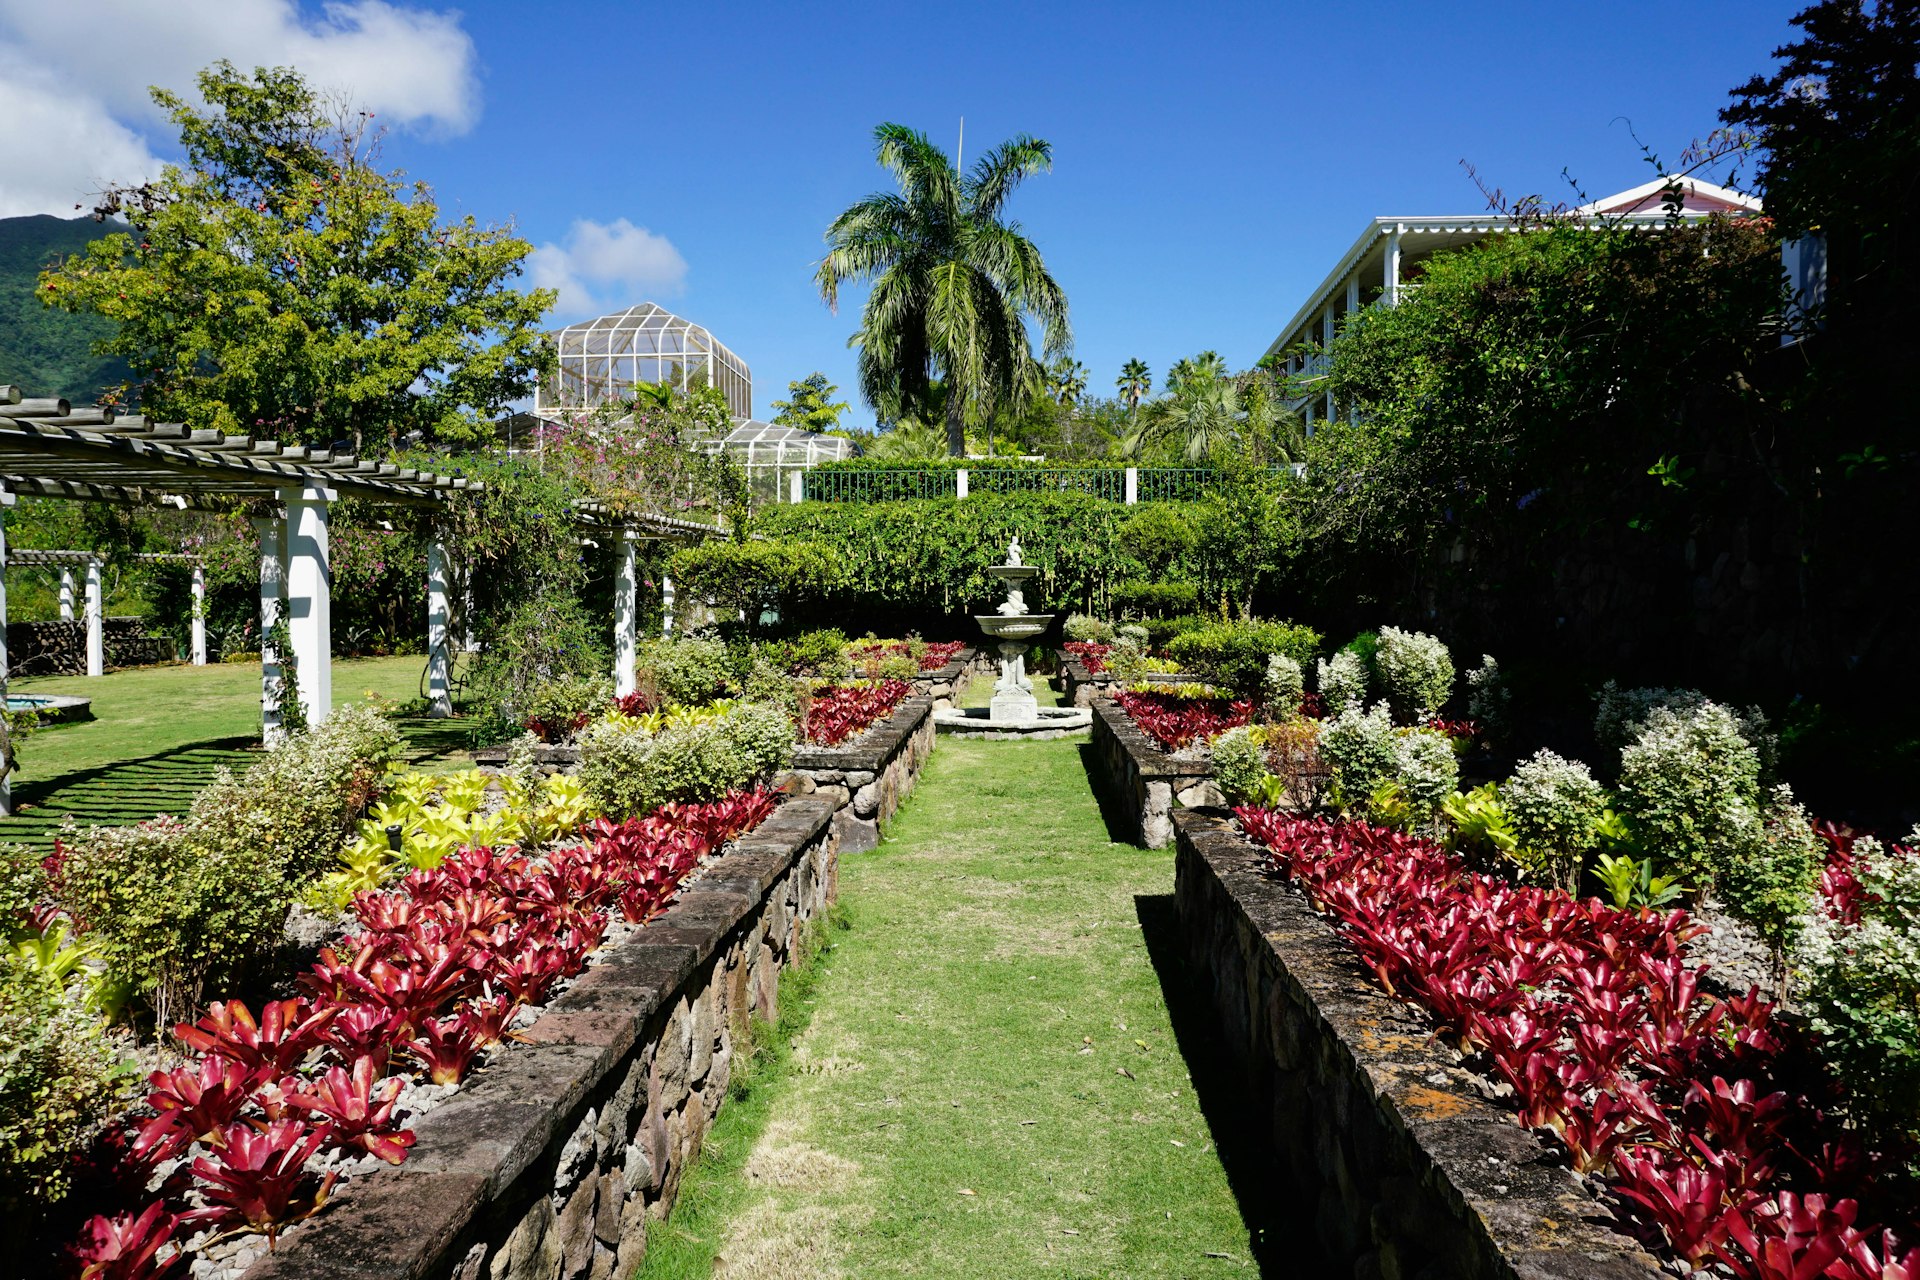 A leafy lane in Nevis' Botanical Garden